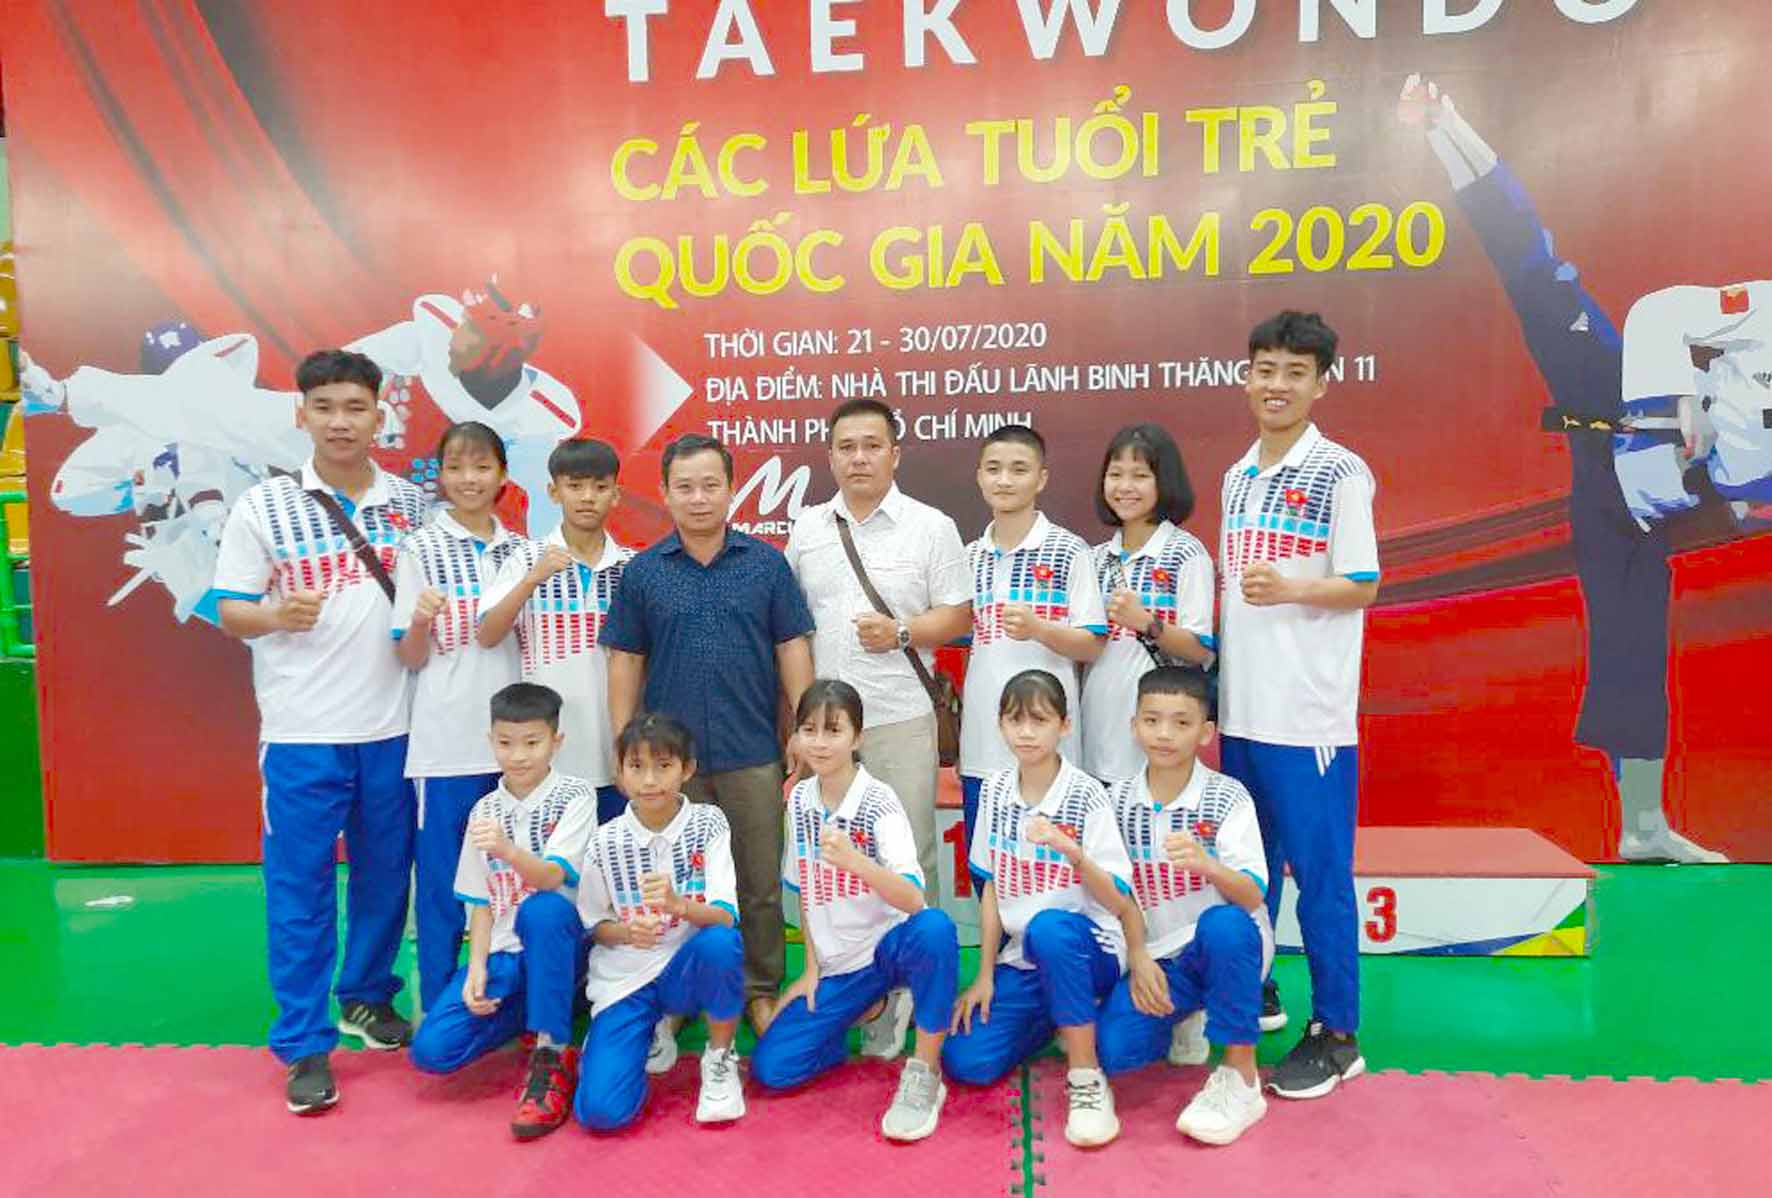 Đội tuyển Taekwondo Gia Lai tham gia tại giải. Ảnh: Vũ Vương